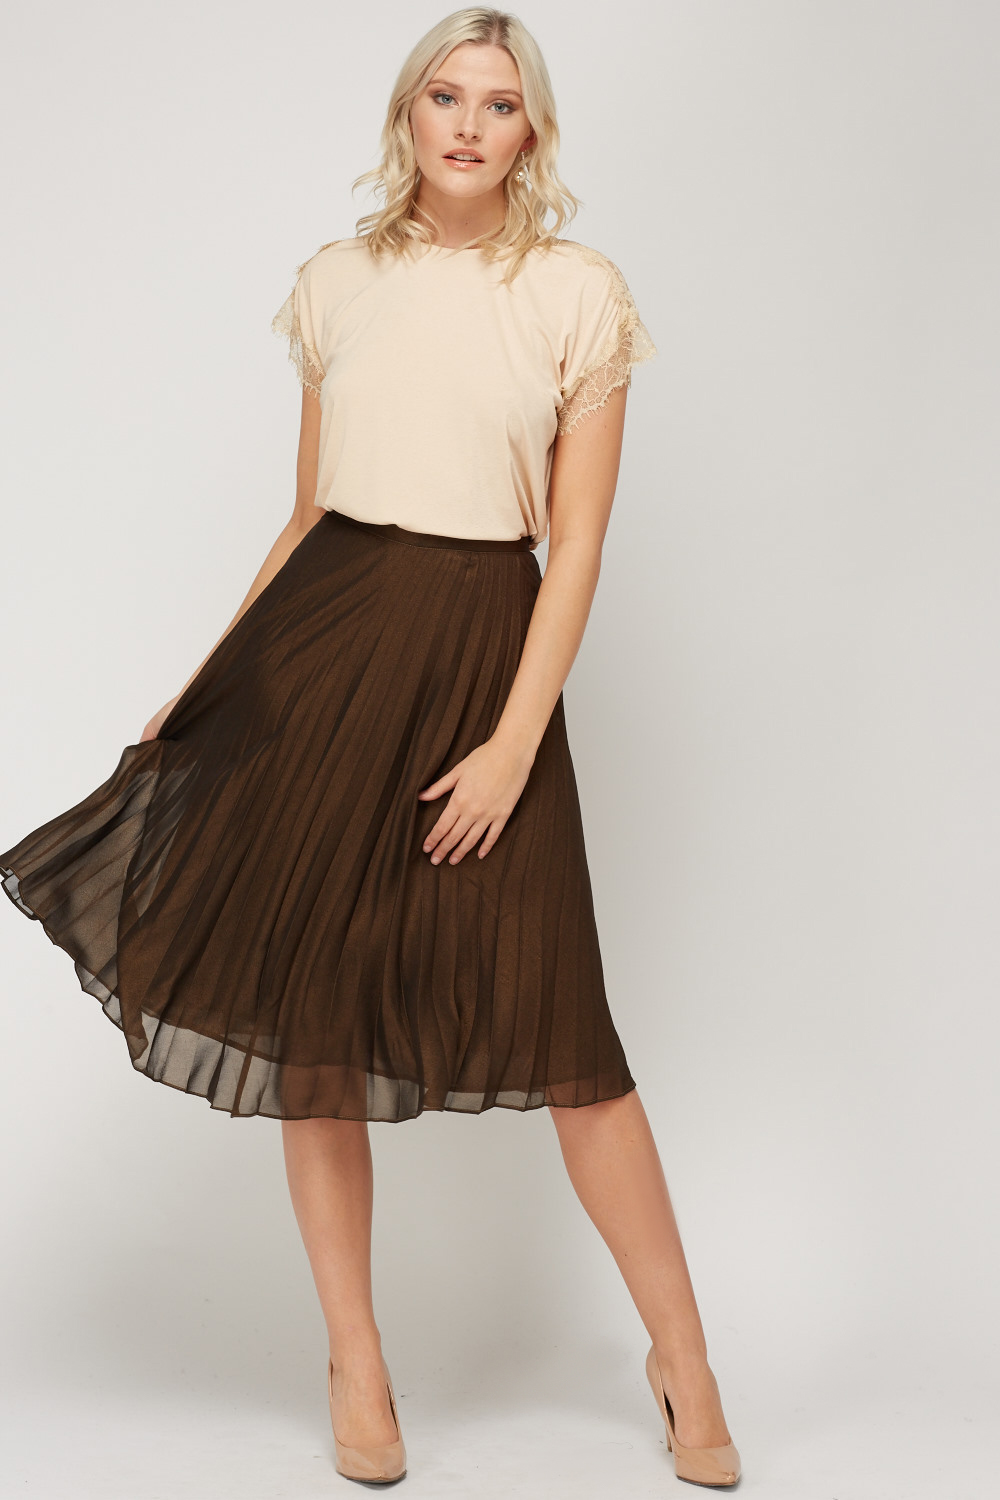 High Waist Pleated Midi Skirt - Just $7